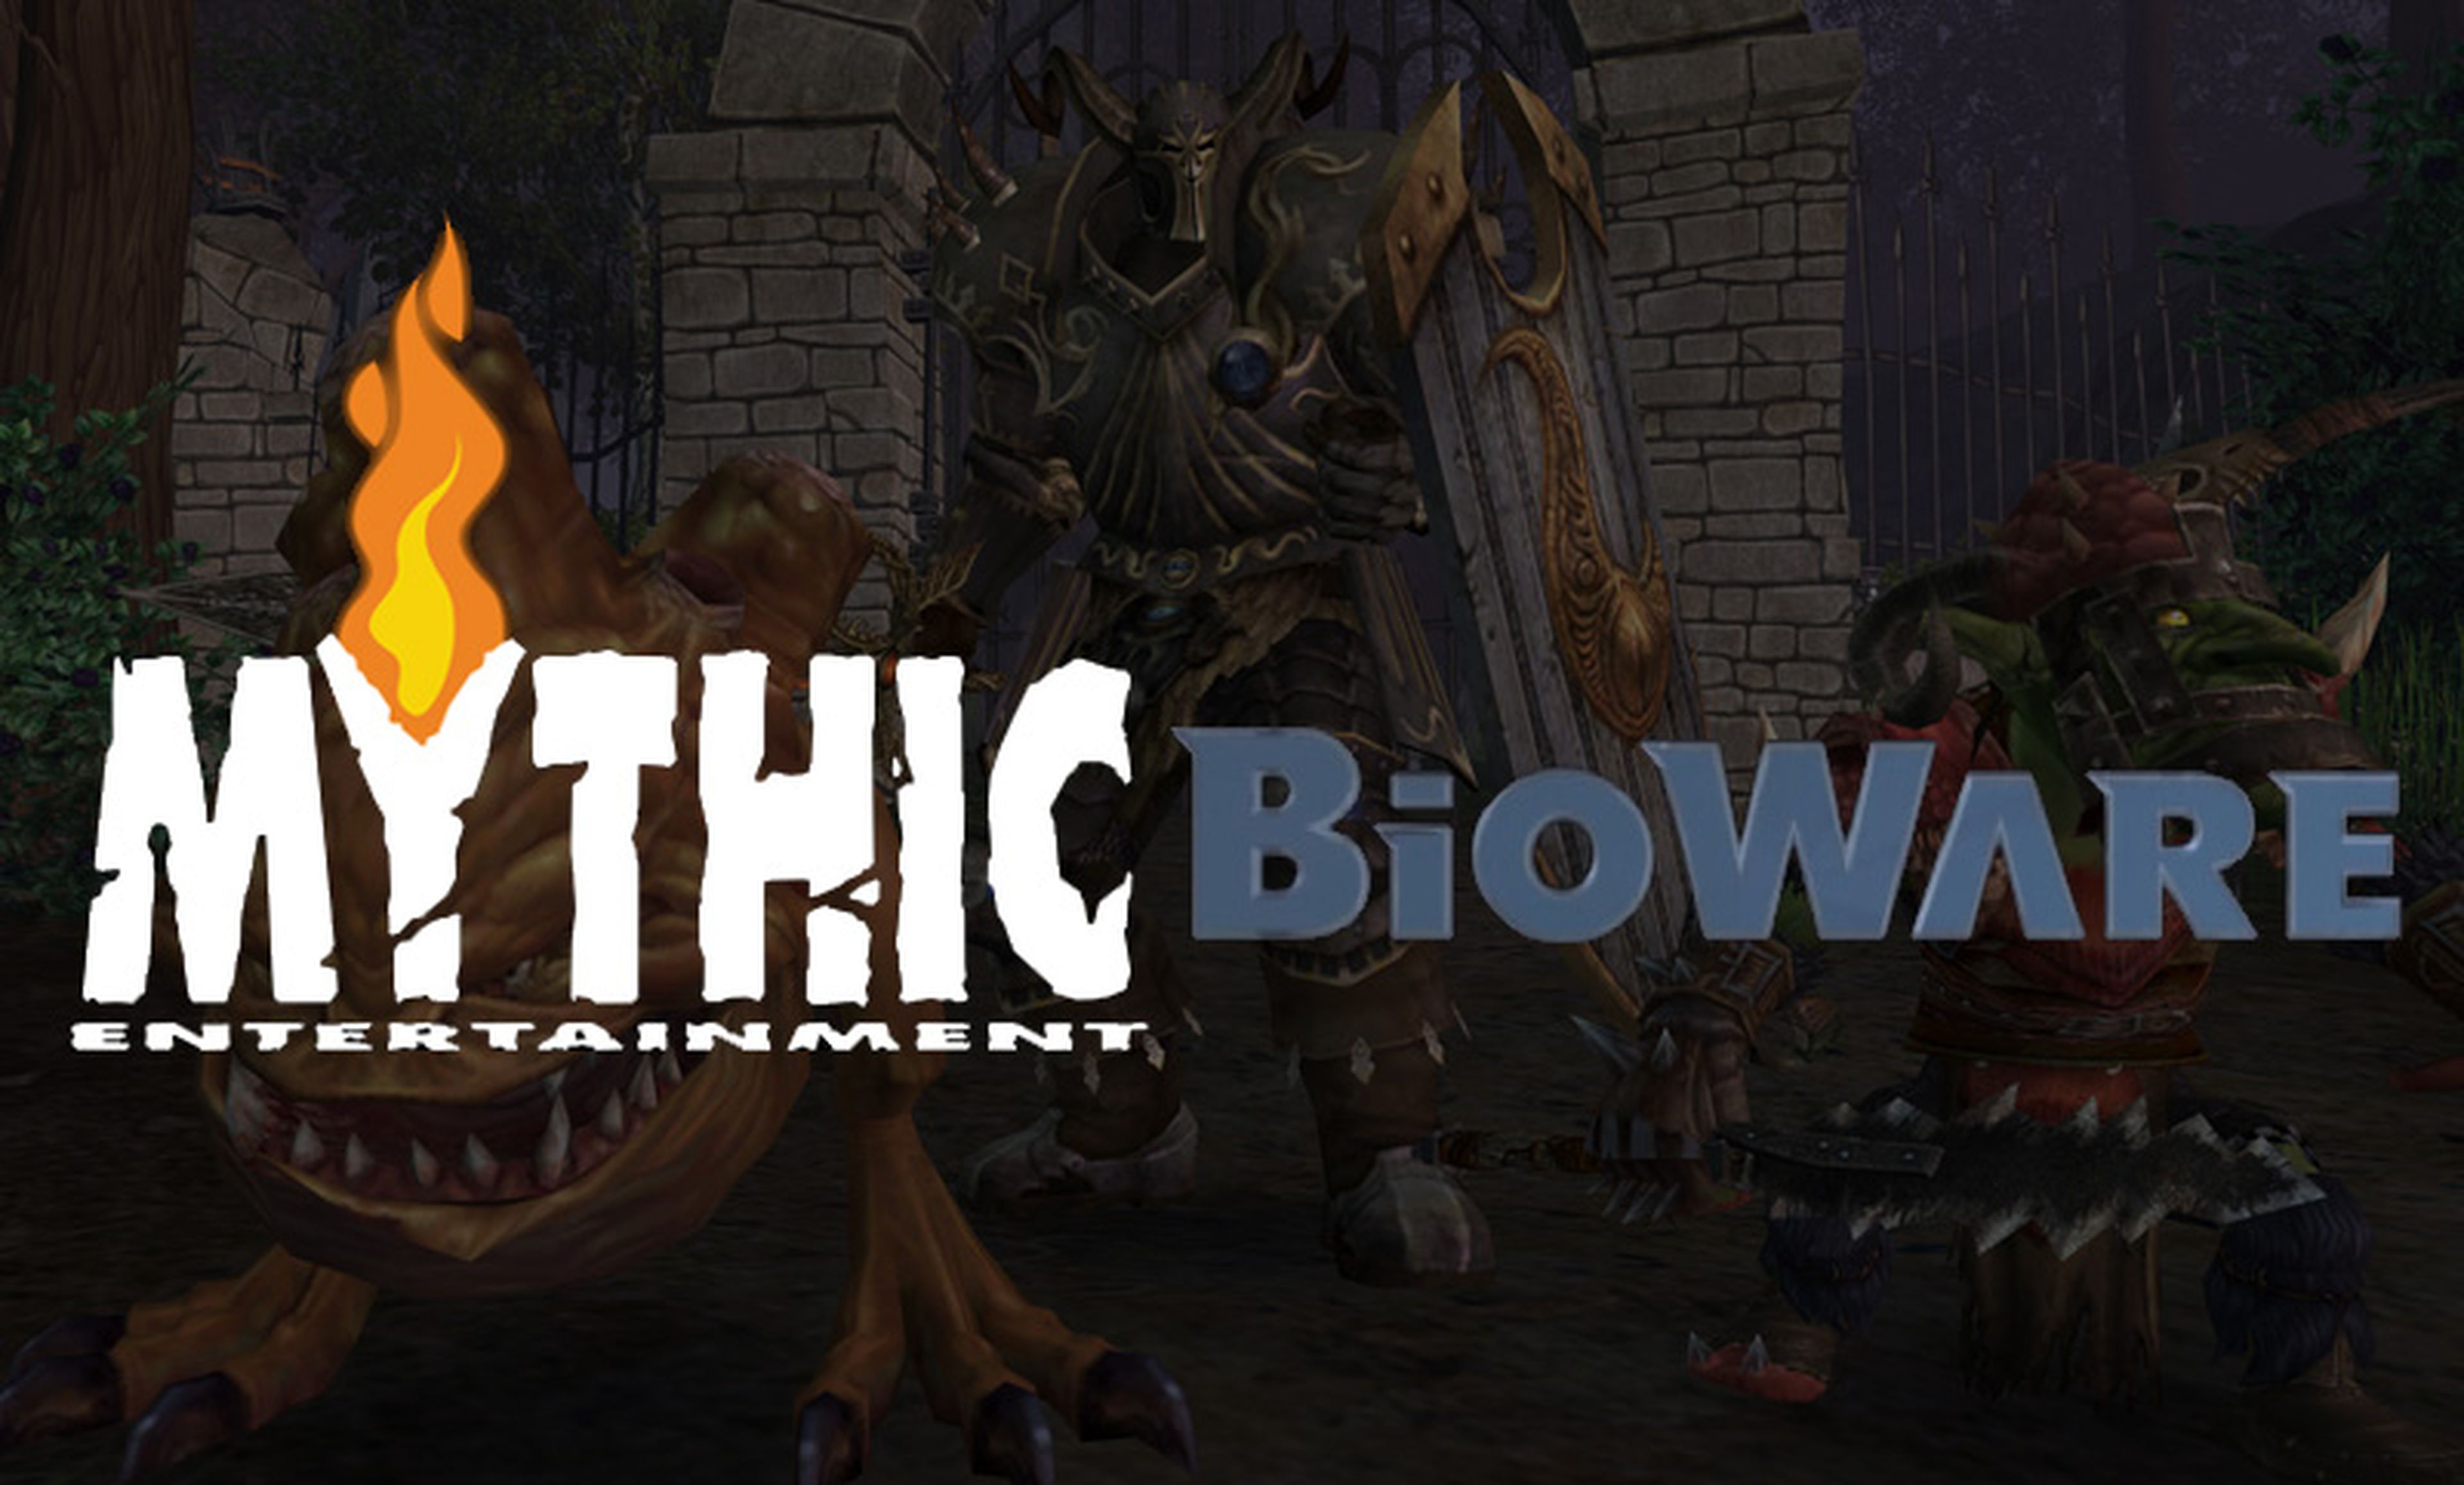 El advenimiento de Bioware Mythic